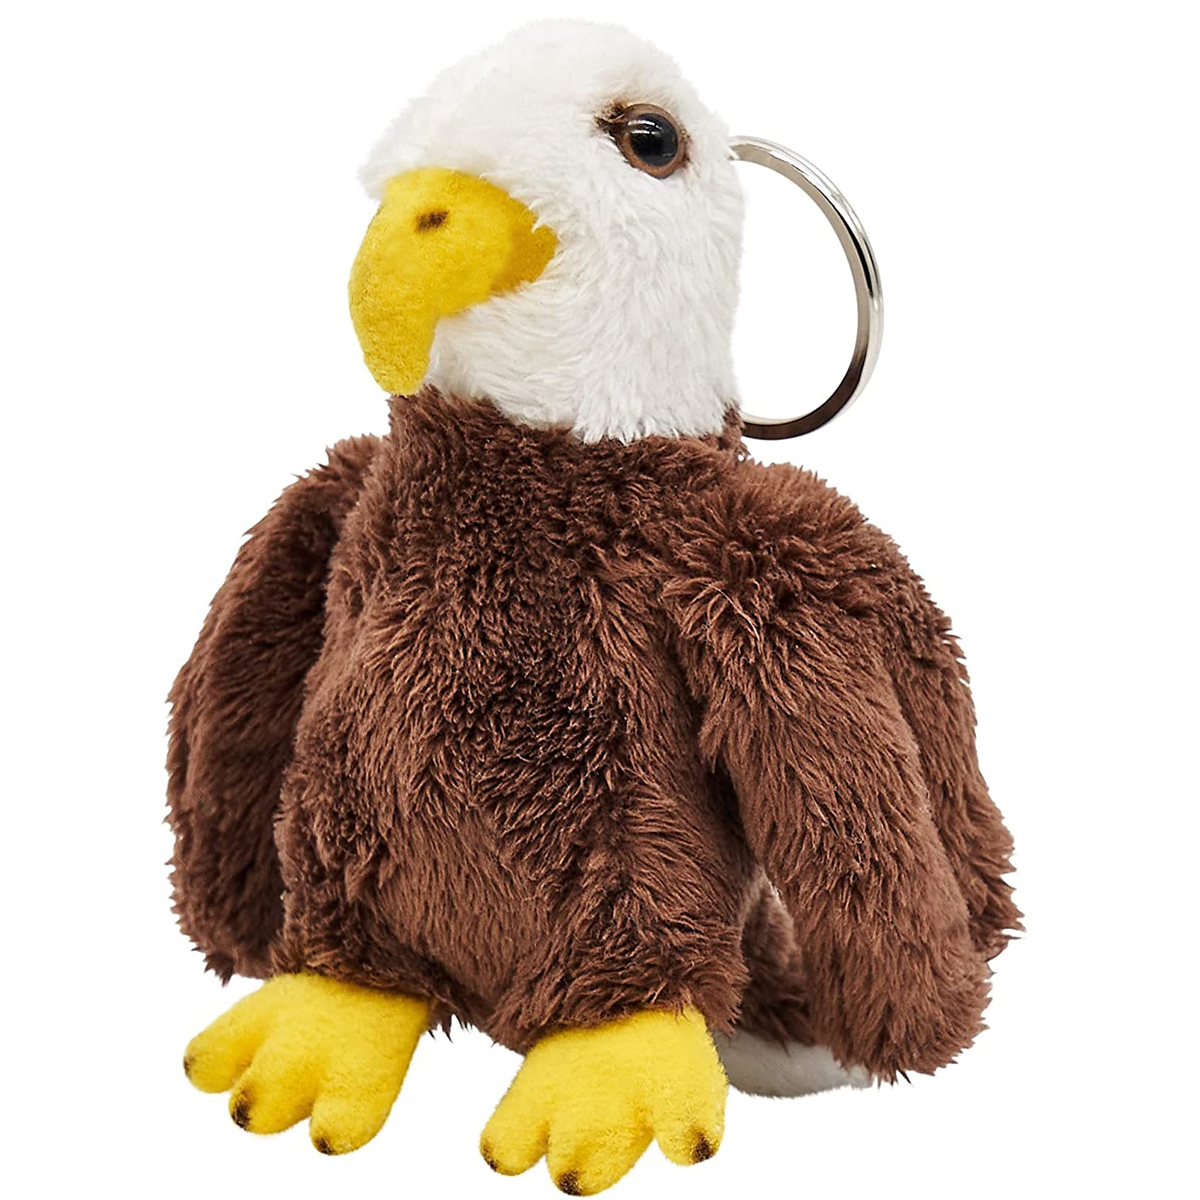 Uni-Toys - Weißkopfseeadler mit Schlüsselanhänger - 11 cm (Höhe) - Adler, Vogel - Plüschtier, Kuscheltier